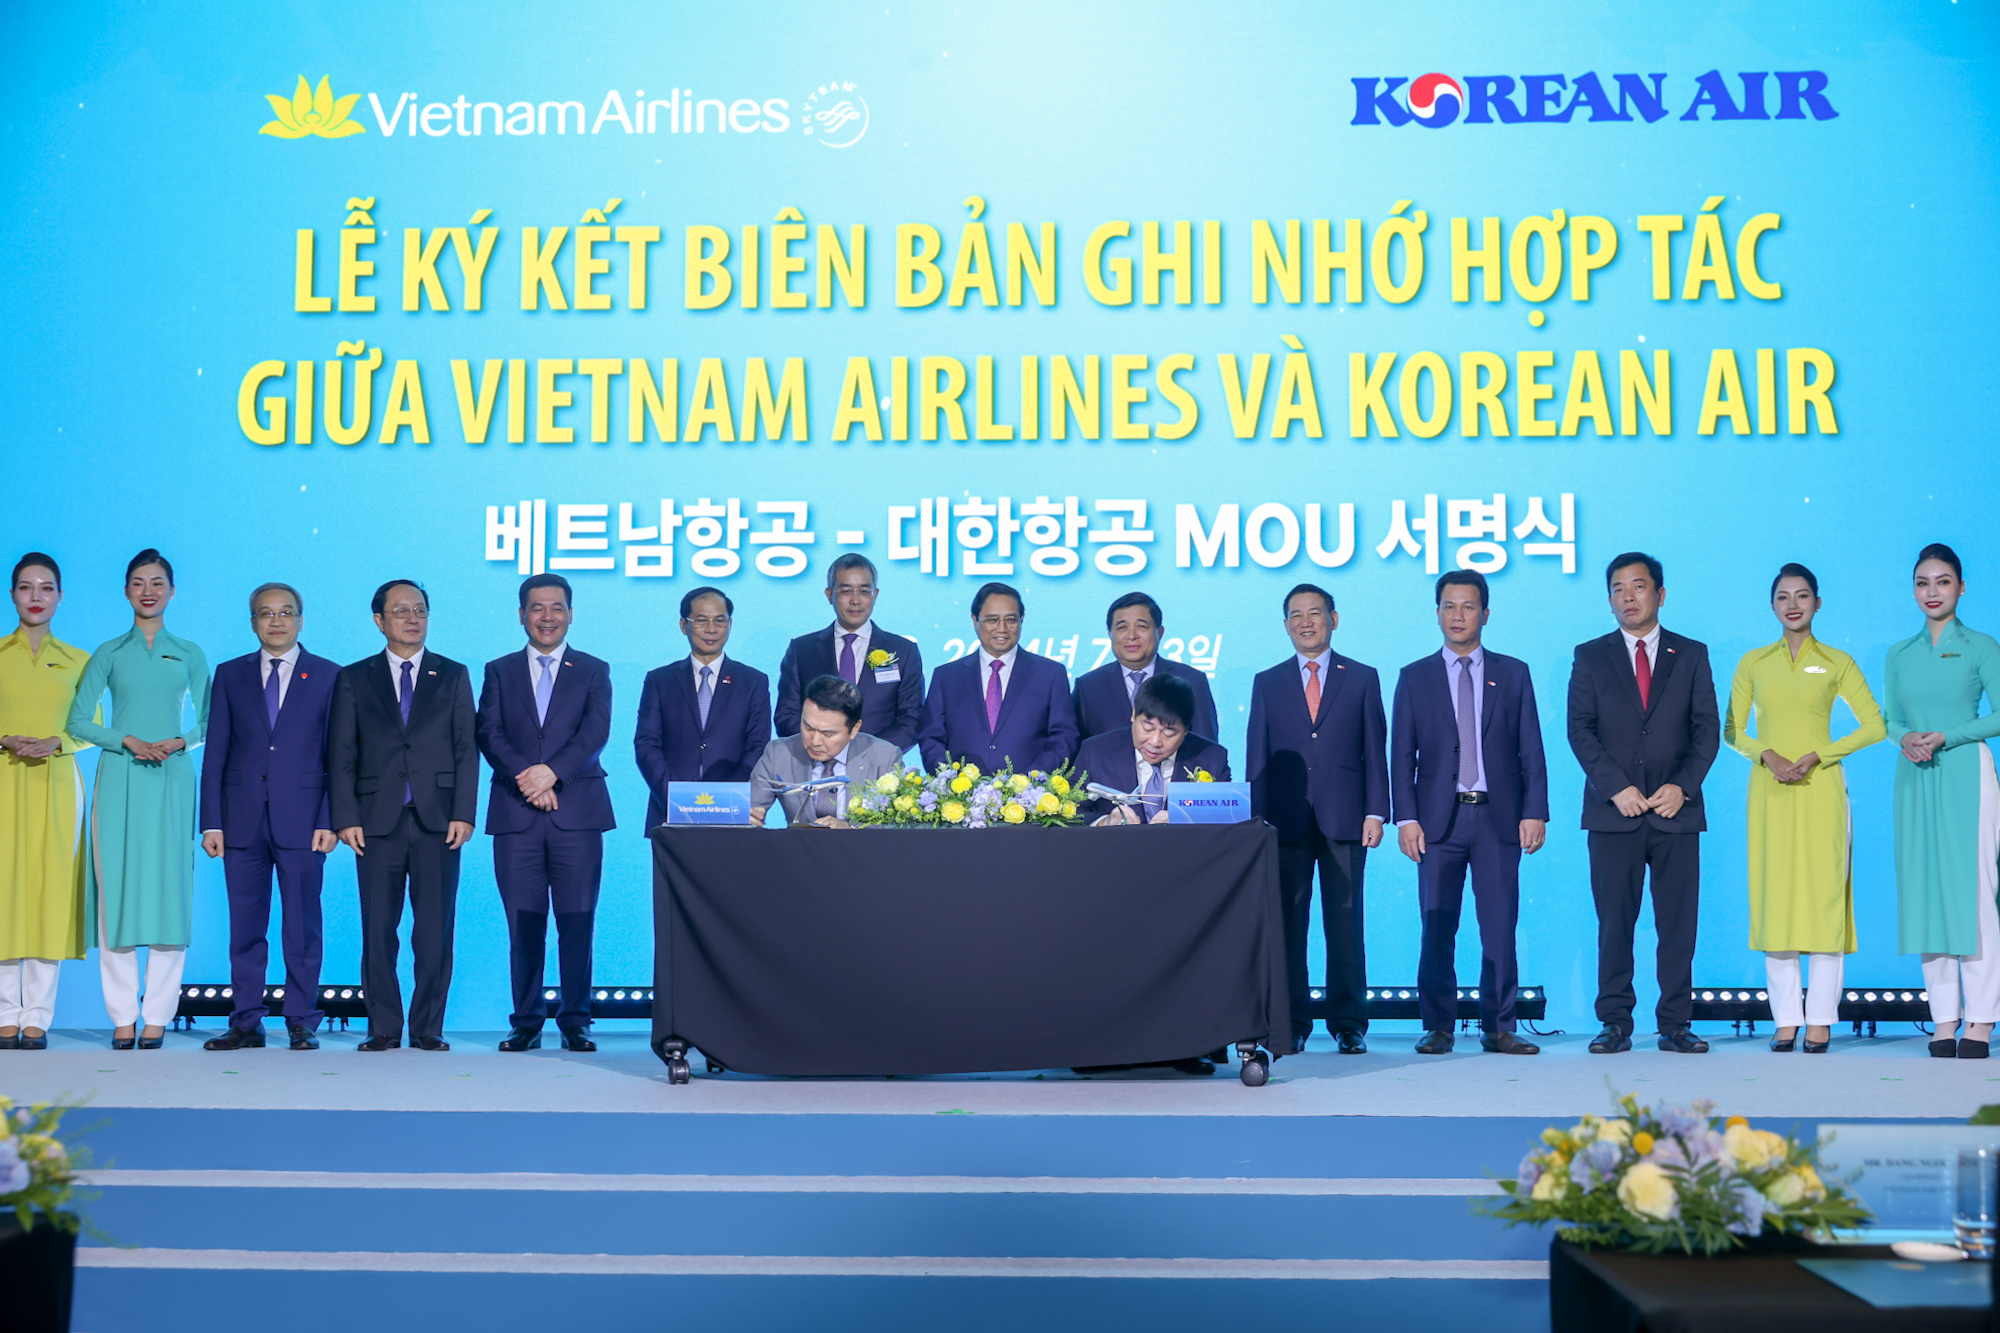 Trong khuôn khổ chuyến thăm của Thủ tướng Phạm Minh Chính tới hàn Quốc, Vietnam Airlines ký kết Biên bản ghi nhớ hợp tác với Korean Air và 04 công ty du lịch tại Hàn Quốc - Ảnh: VGP/Nhật Bắc